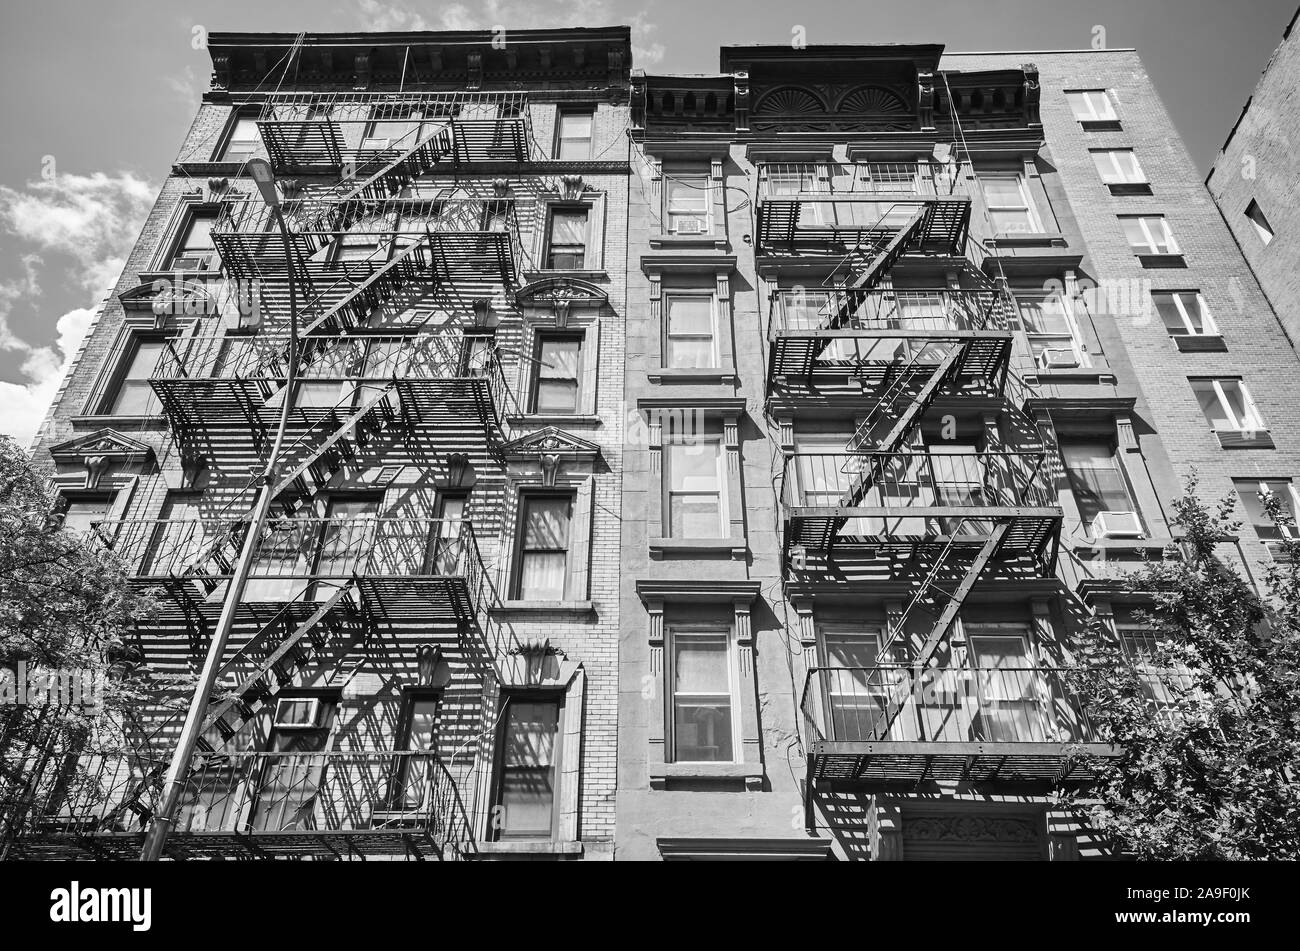 Noir et blanc photo de vieux bâtiments avec des sorties de secours, New York, USA. Banque D'Images